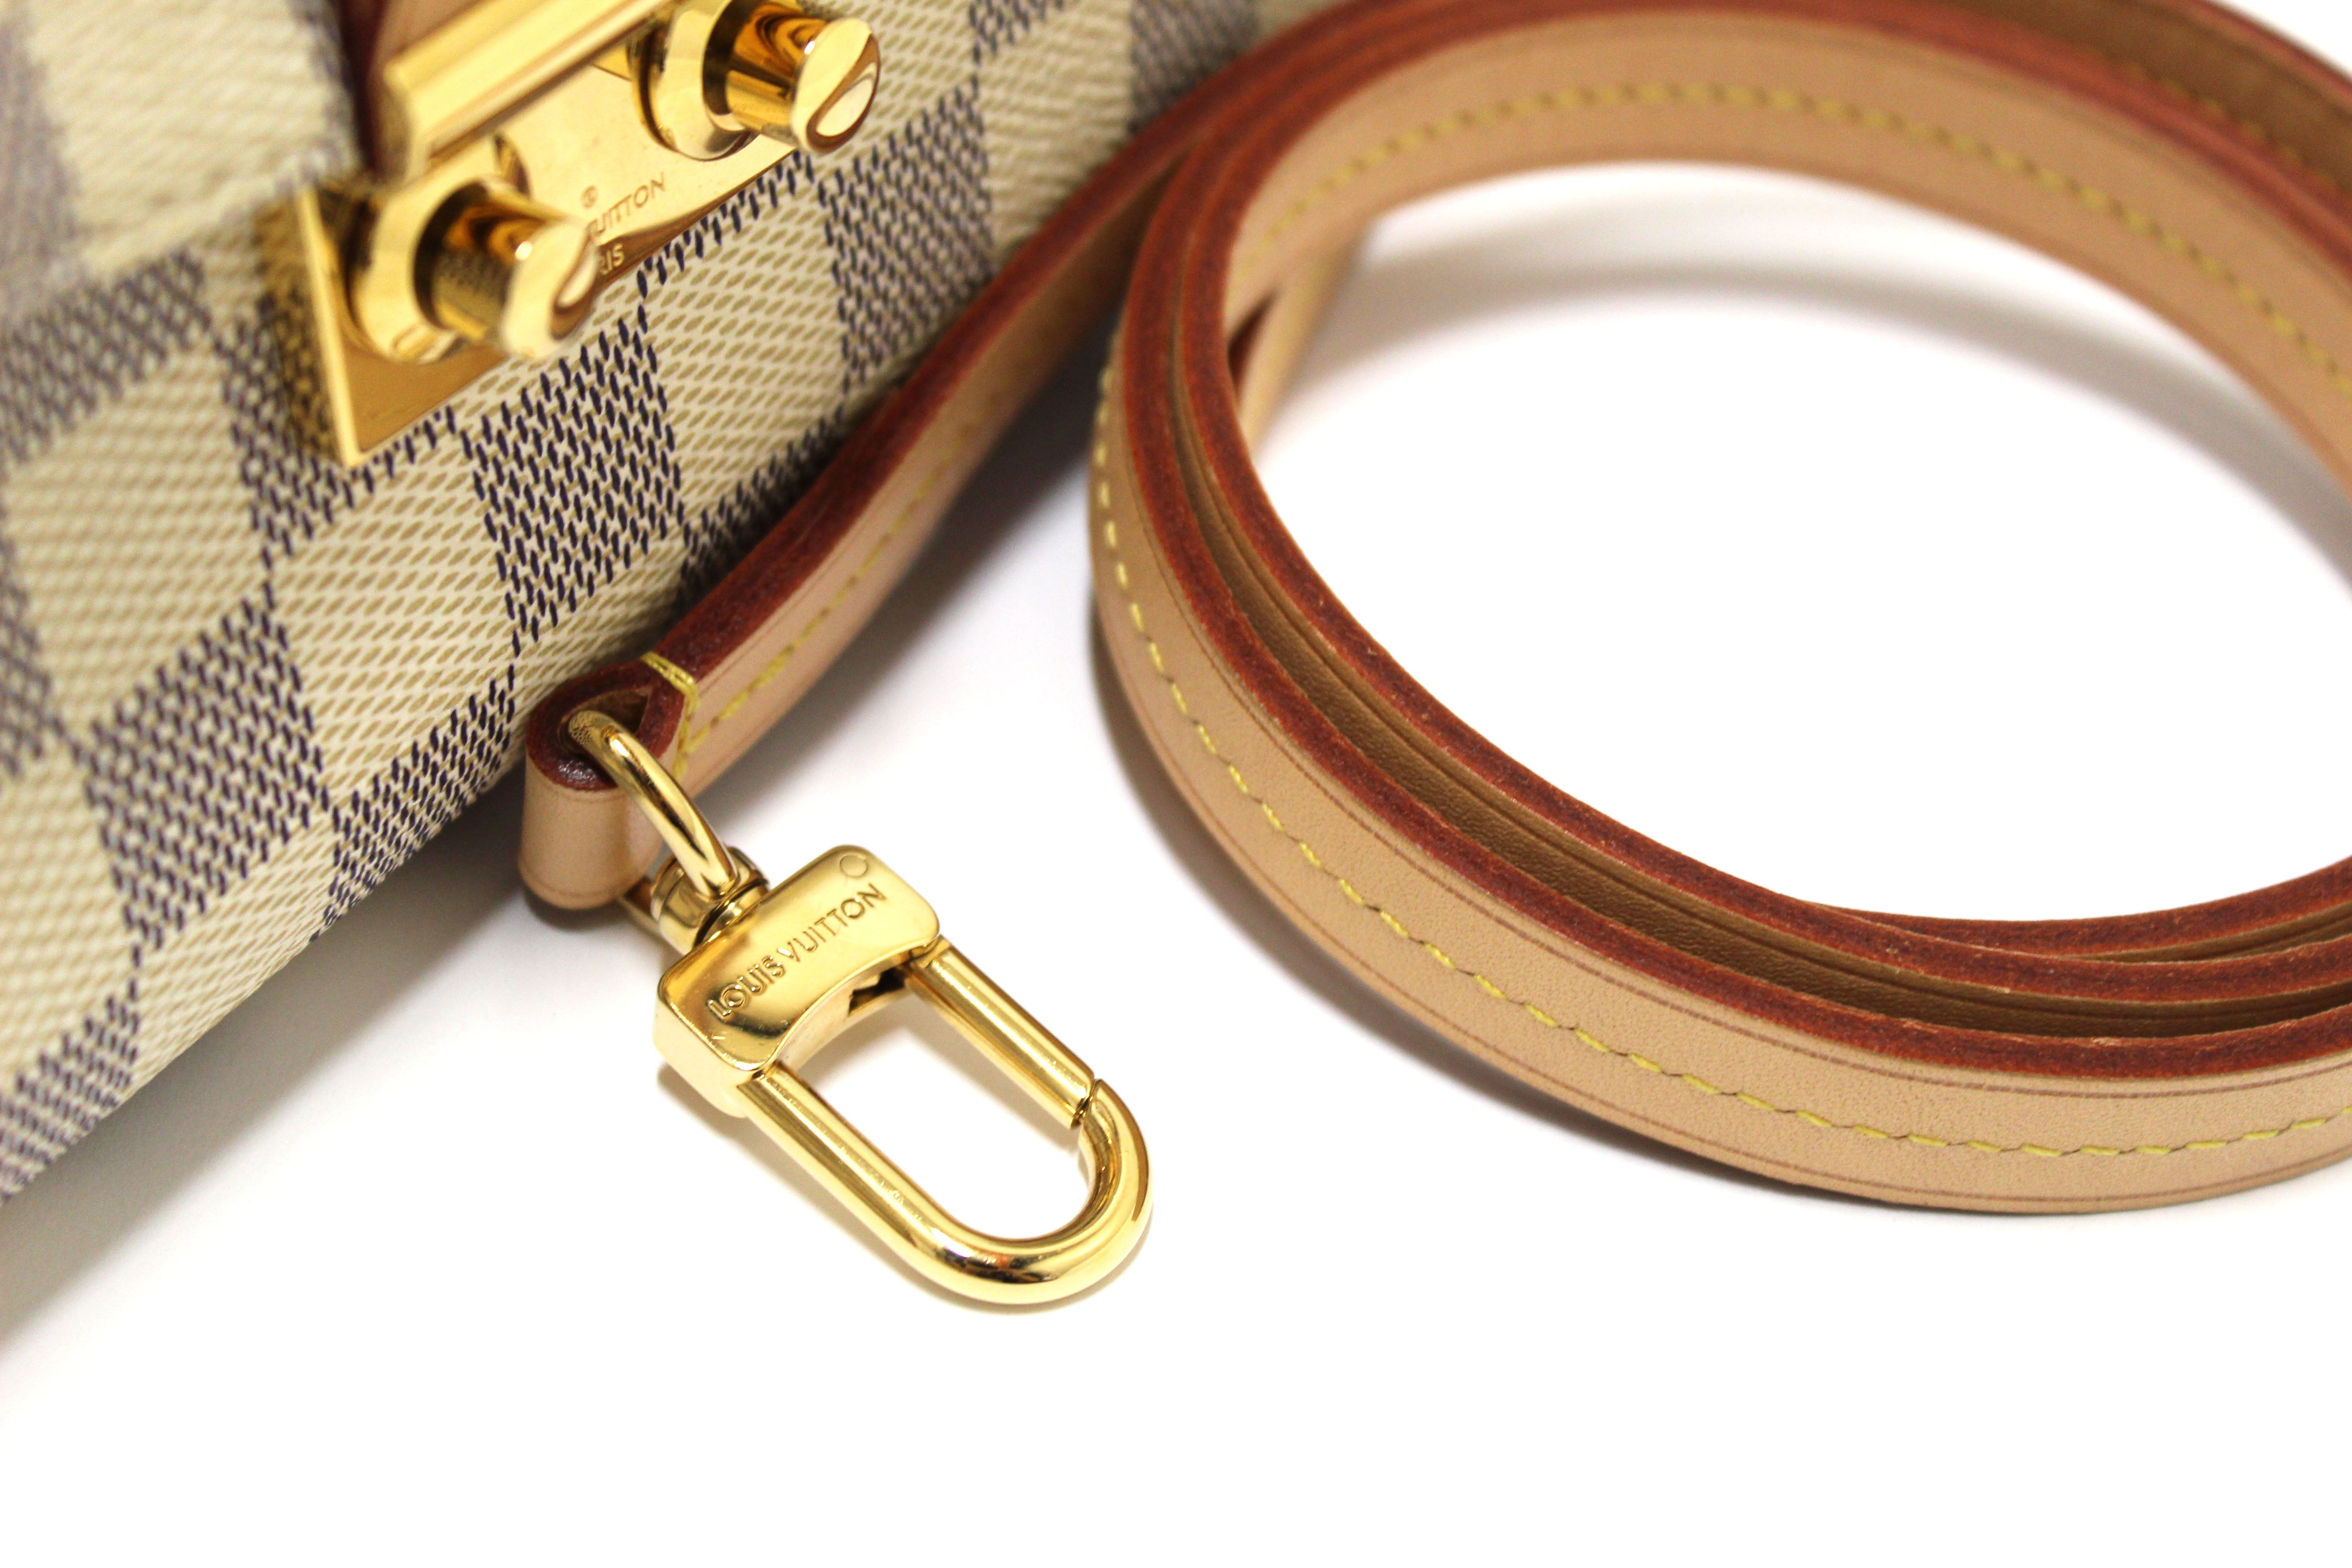 Authentic Louis Vuitton Damier Azur Croisette Handbag/Messenger Bag